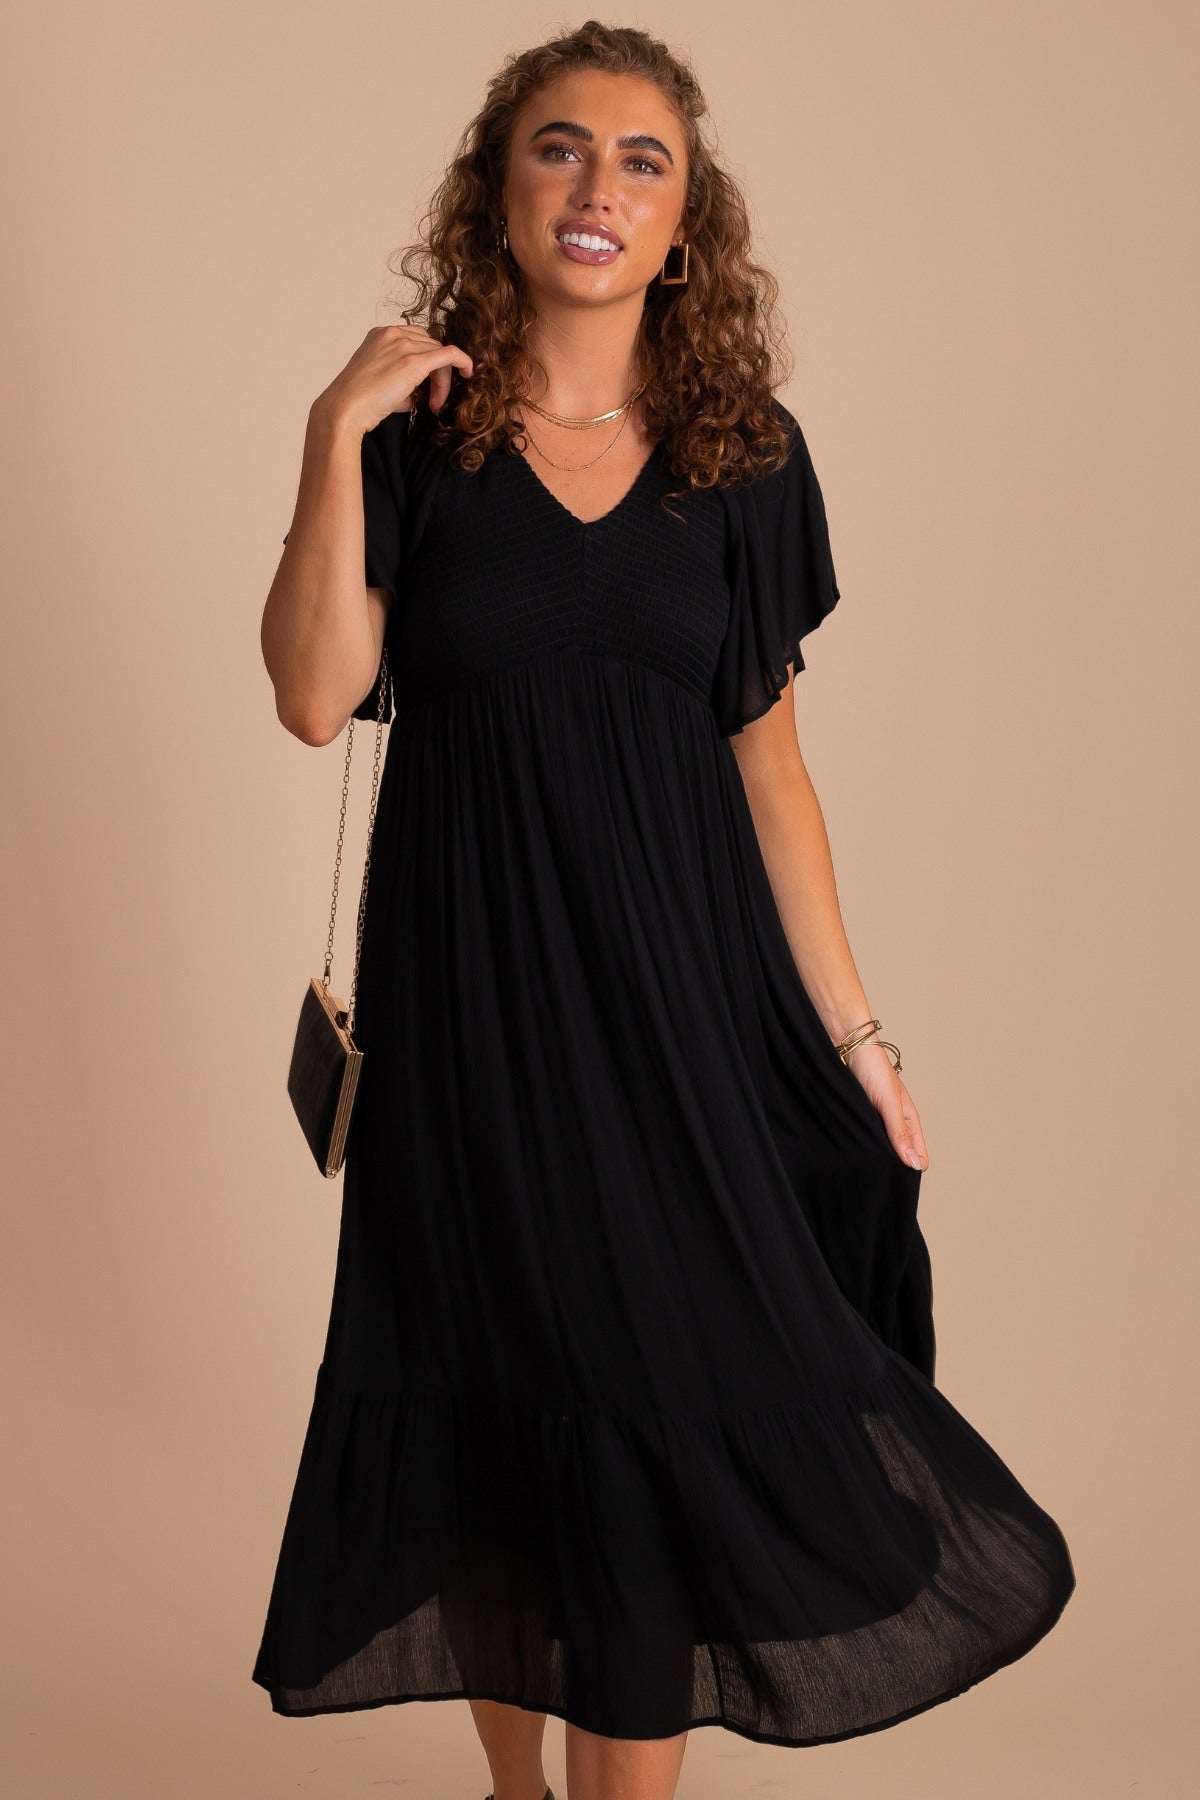 Full Heart Black Smocked Midi Dress